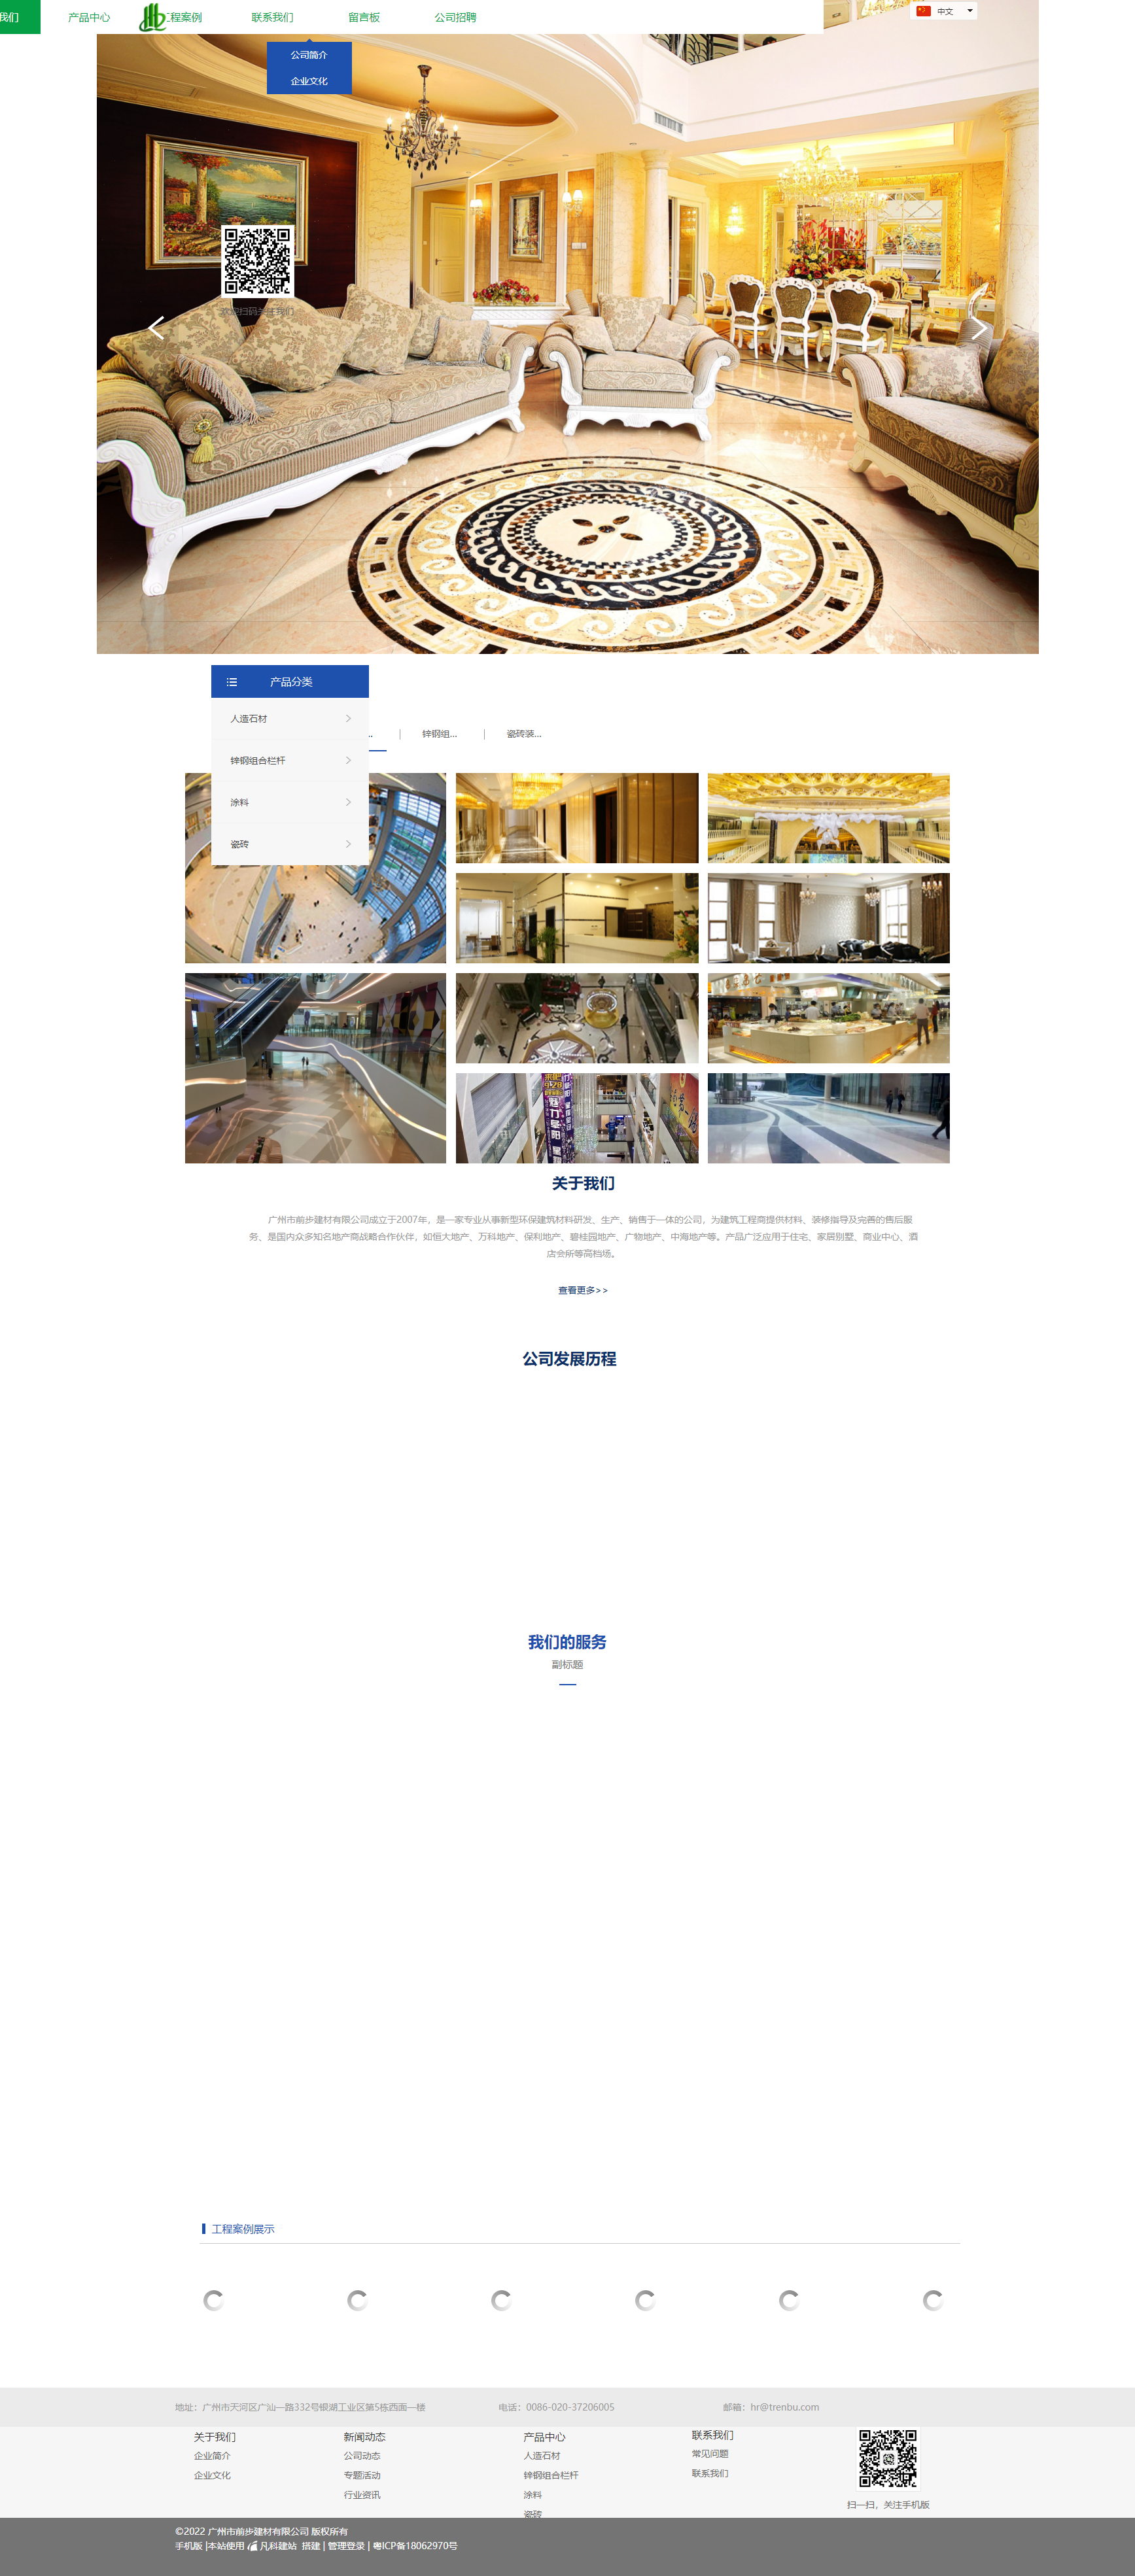 广州市前步建材有限公司网站案例